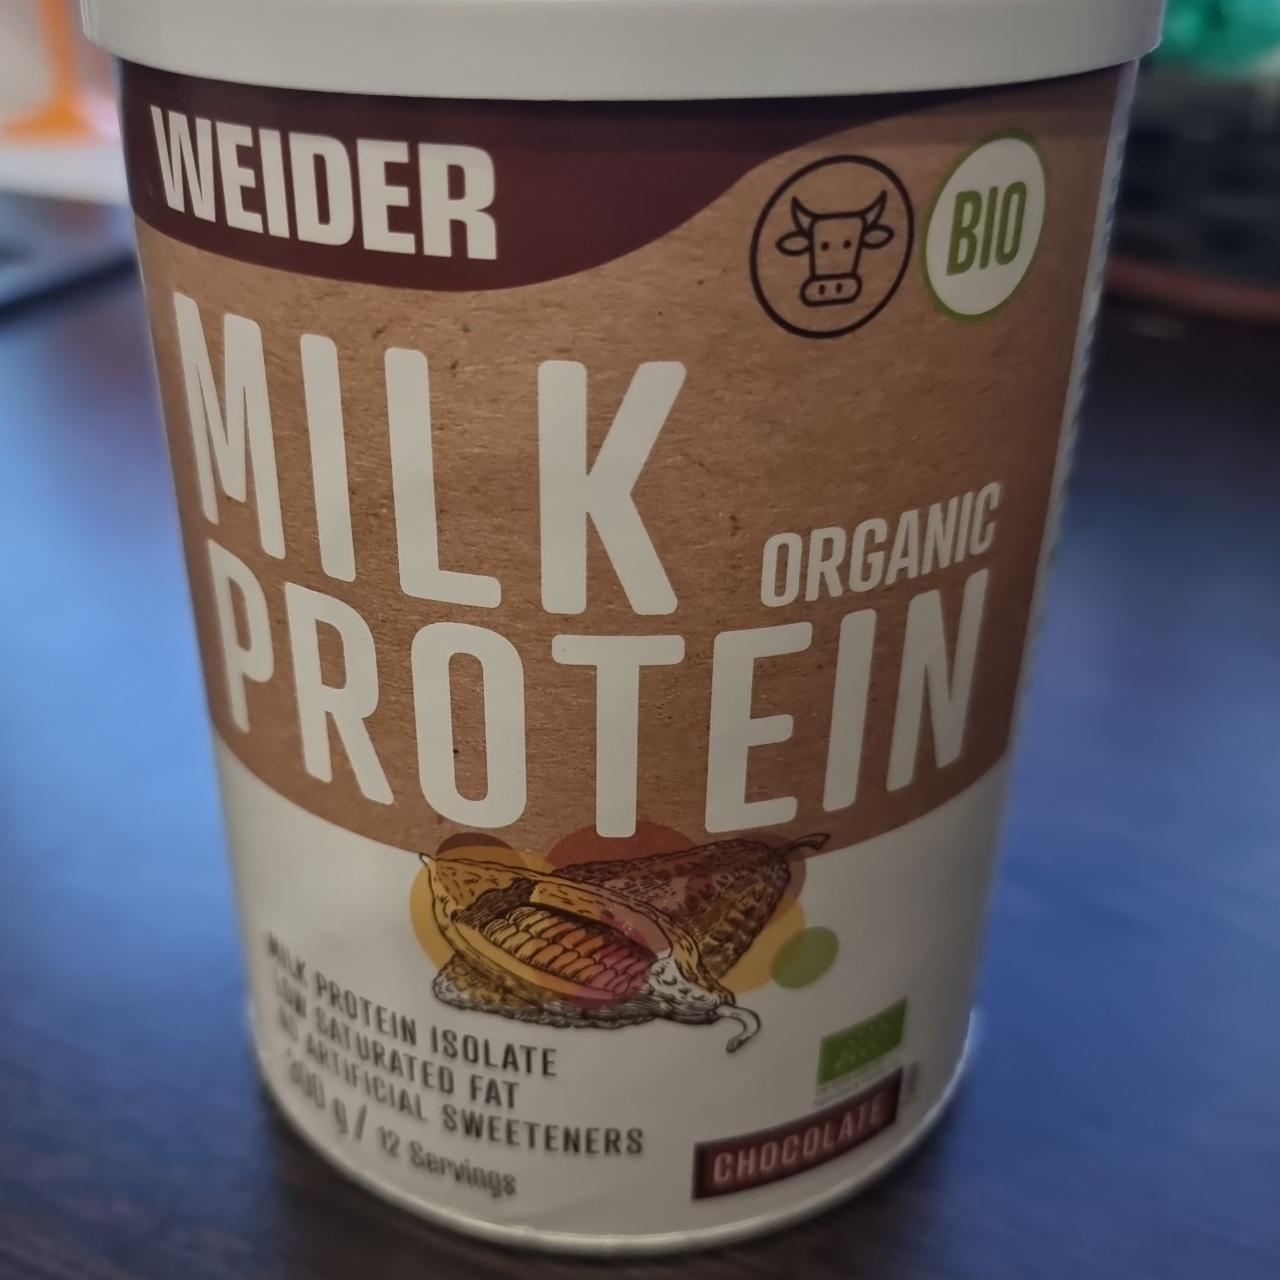 Fotografie - Milk protein organic chocolate Weider